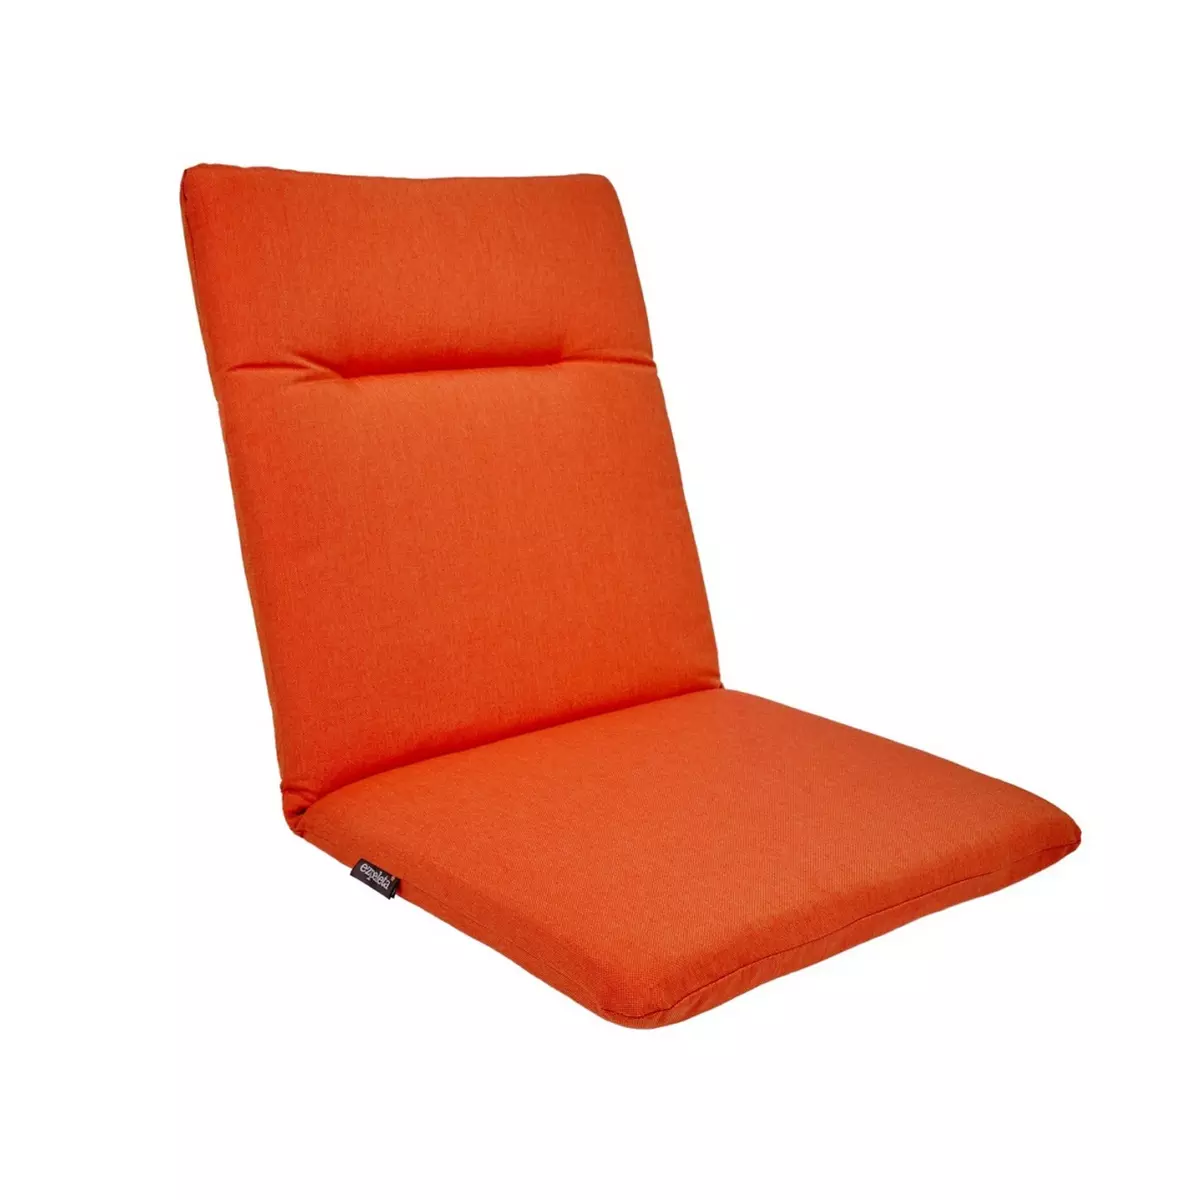 Coussin pour chaise orange